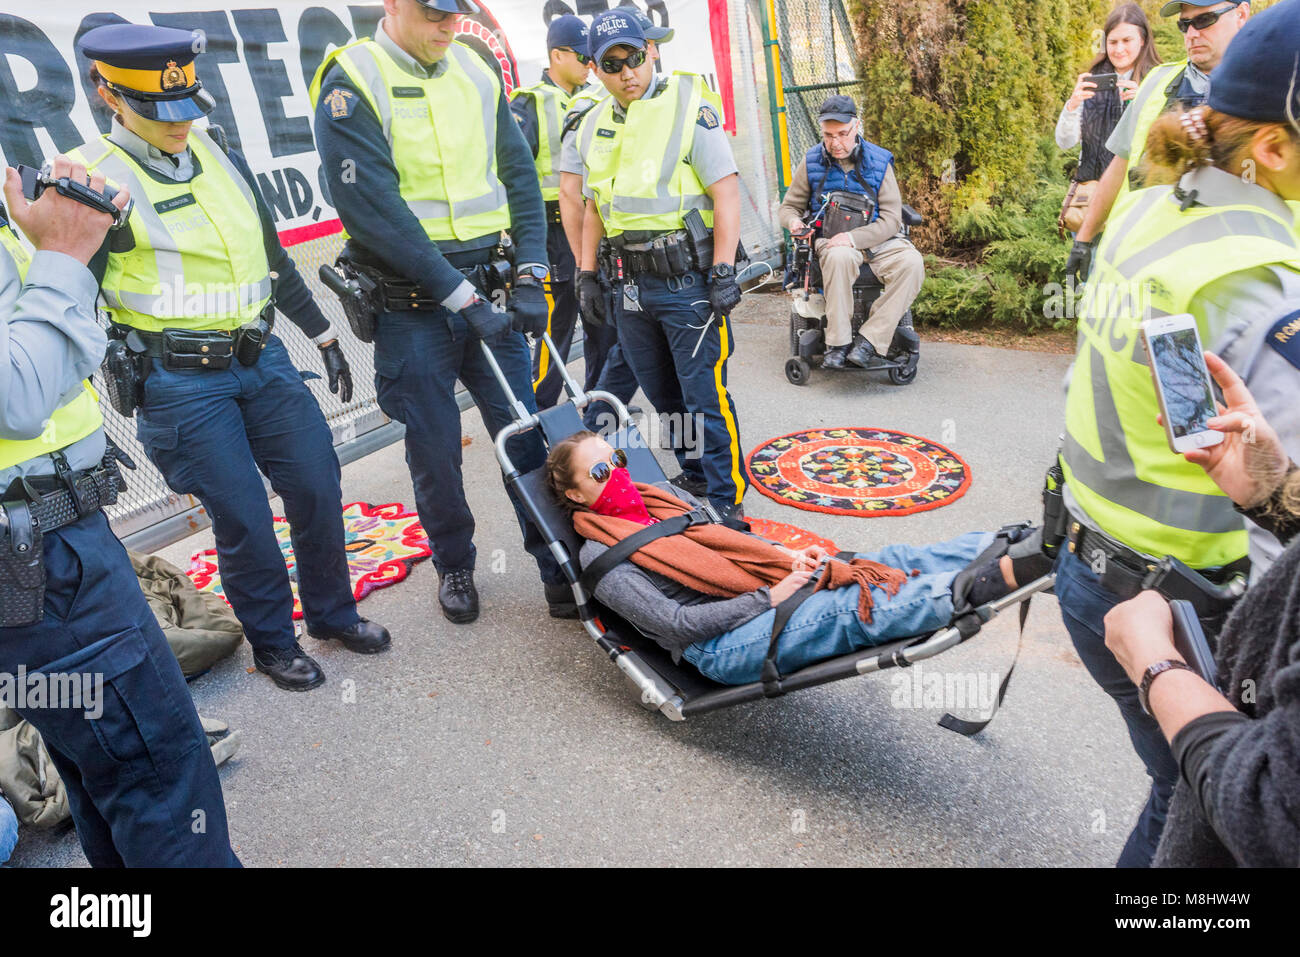 Anti manifestante Pipeline arrestato in ingresso al Kinder Morgan terminale di pipeline, Burnaby, British Columbia, Canada. Credito: Michael Wheatley/Alamy Live News Foto Stock